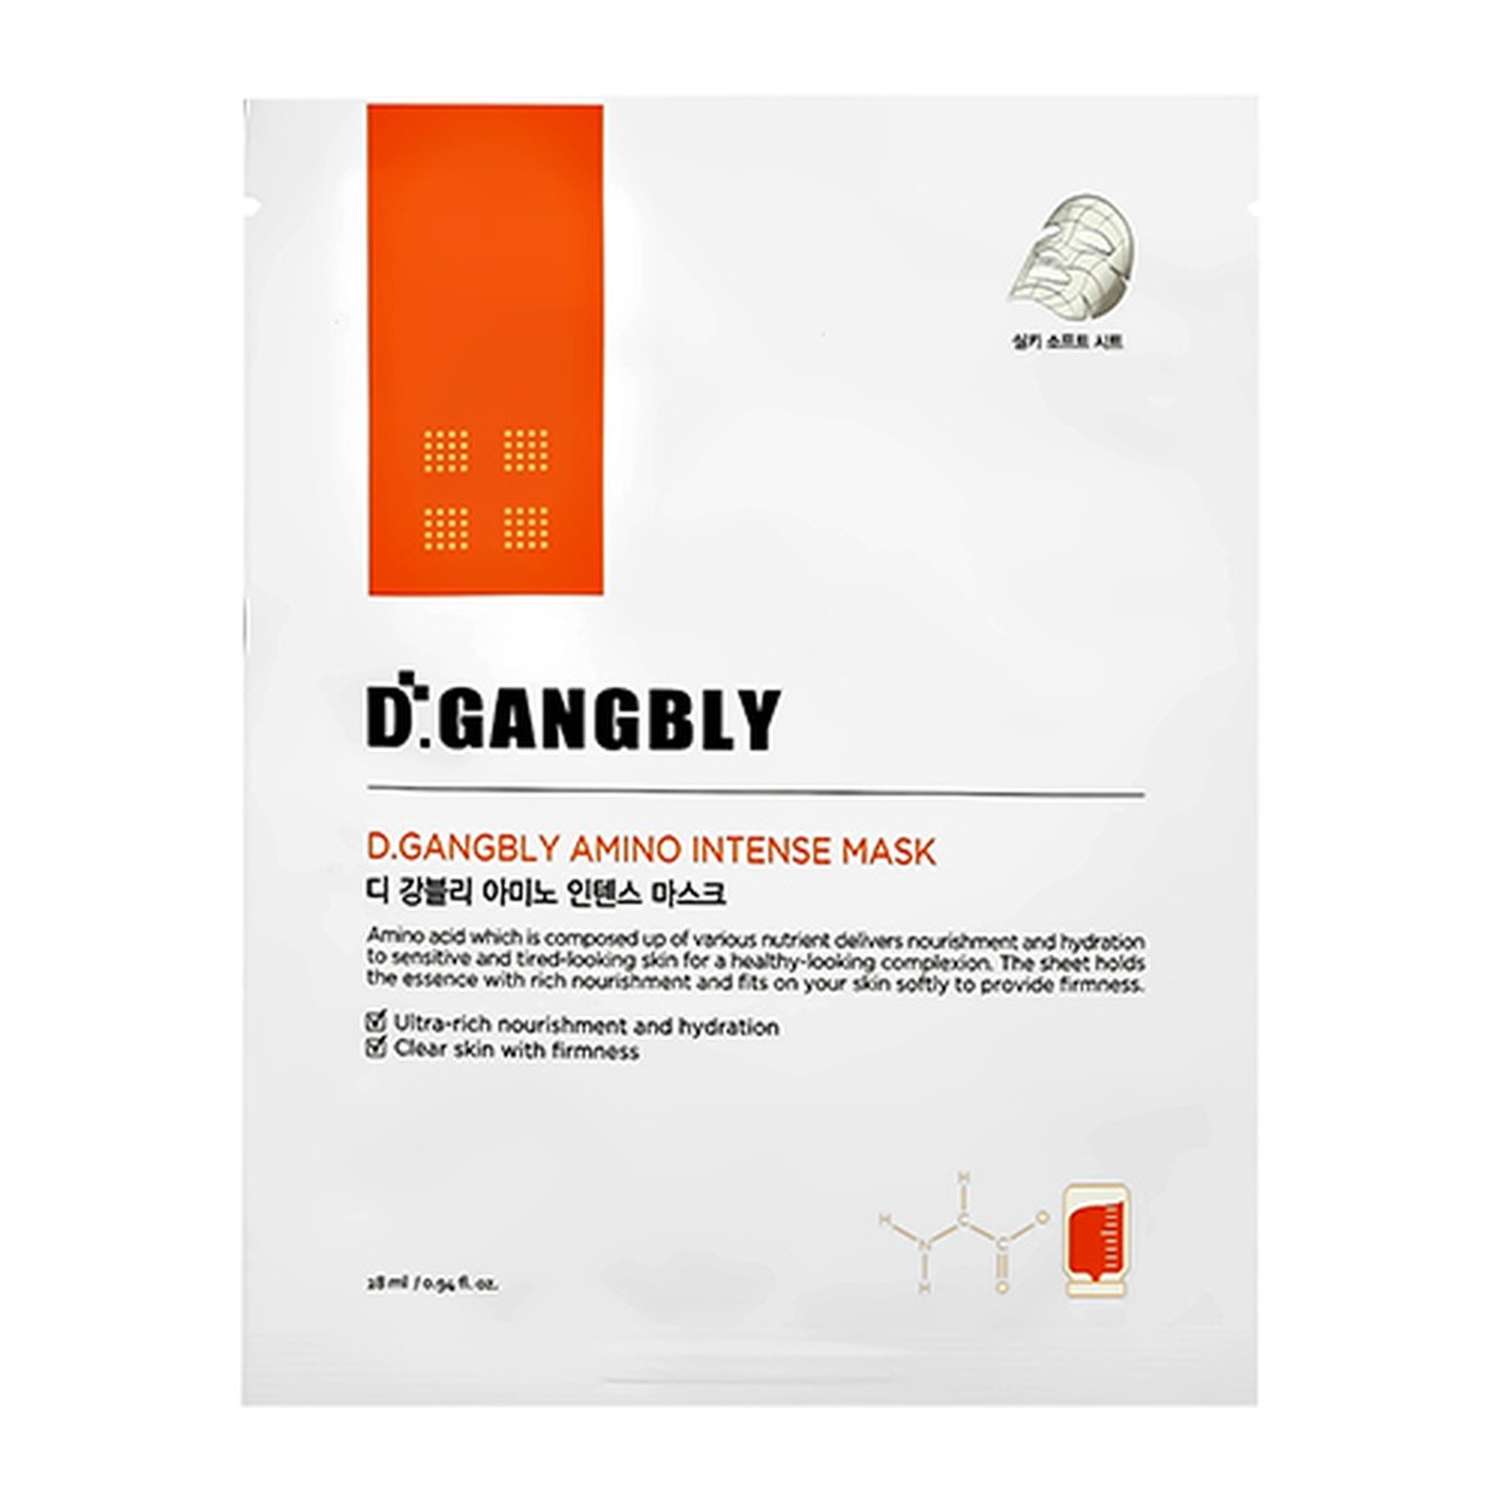 Маска тканевая D.GANGBLY с аминокислотами интенсивно увлажняющая и питательная 28 мл - фото 4